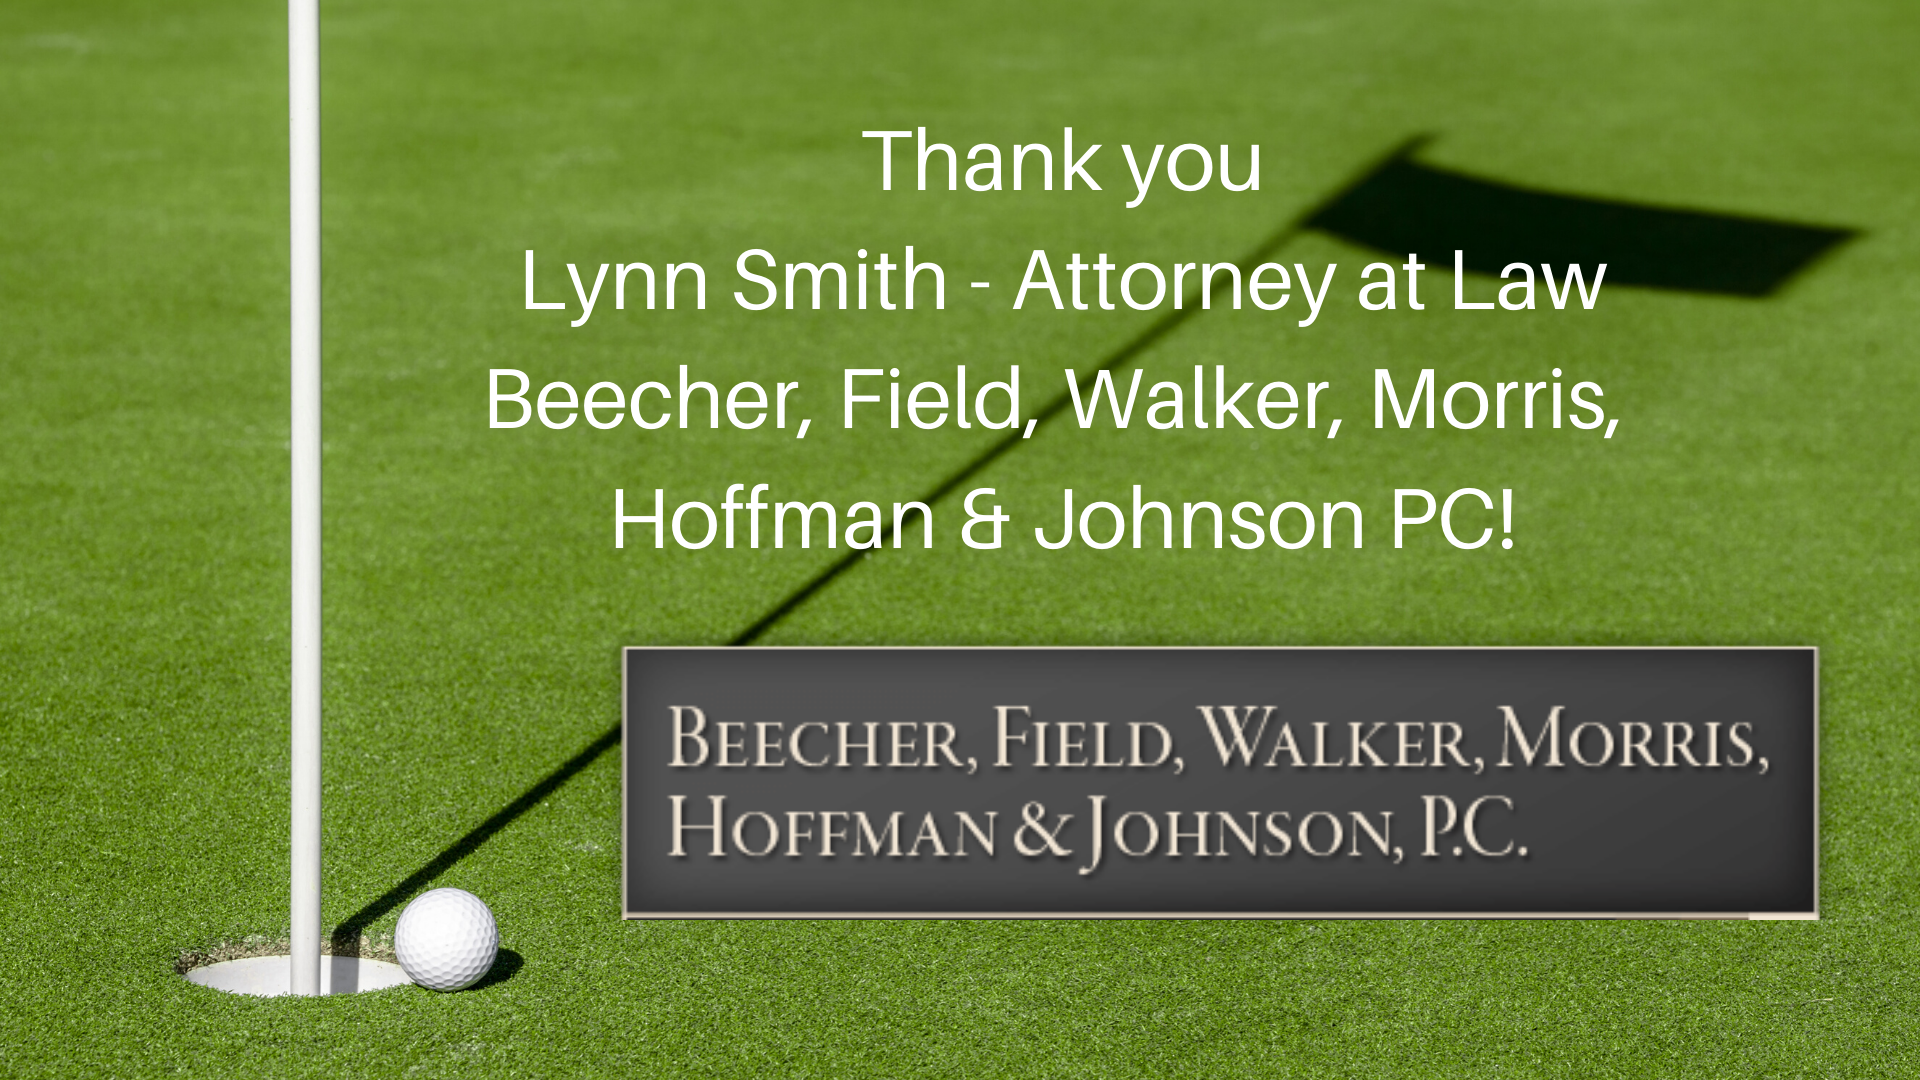 Lynn Smith, Attorney at Law: Beecher, Field, Walker, Morris, Hoffman & Johnson PC